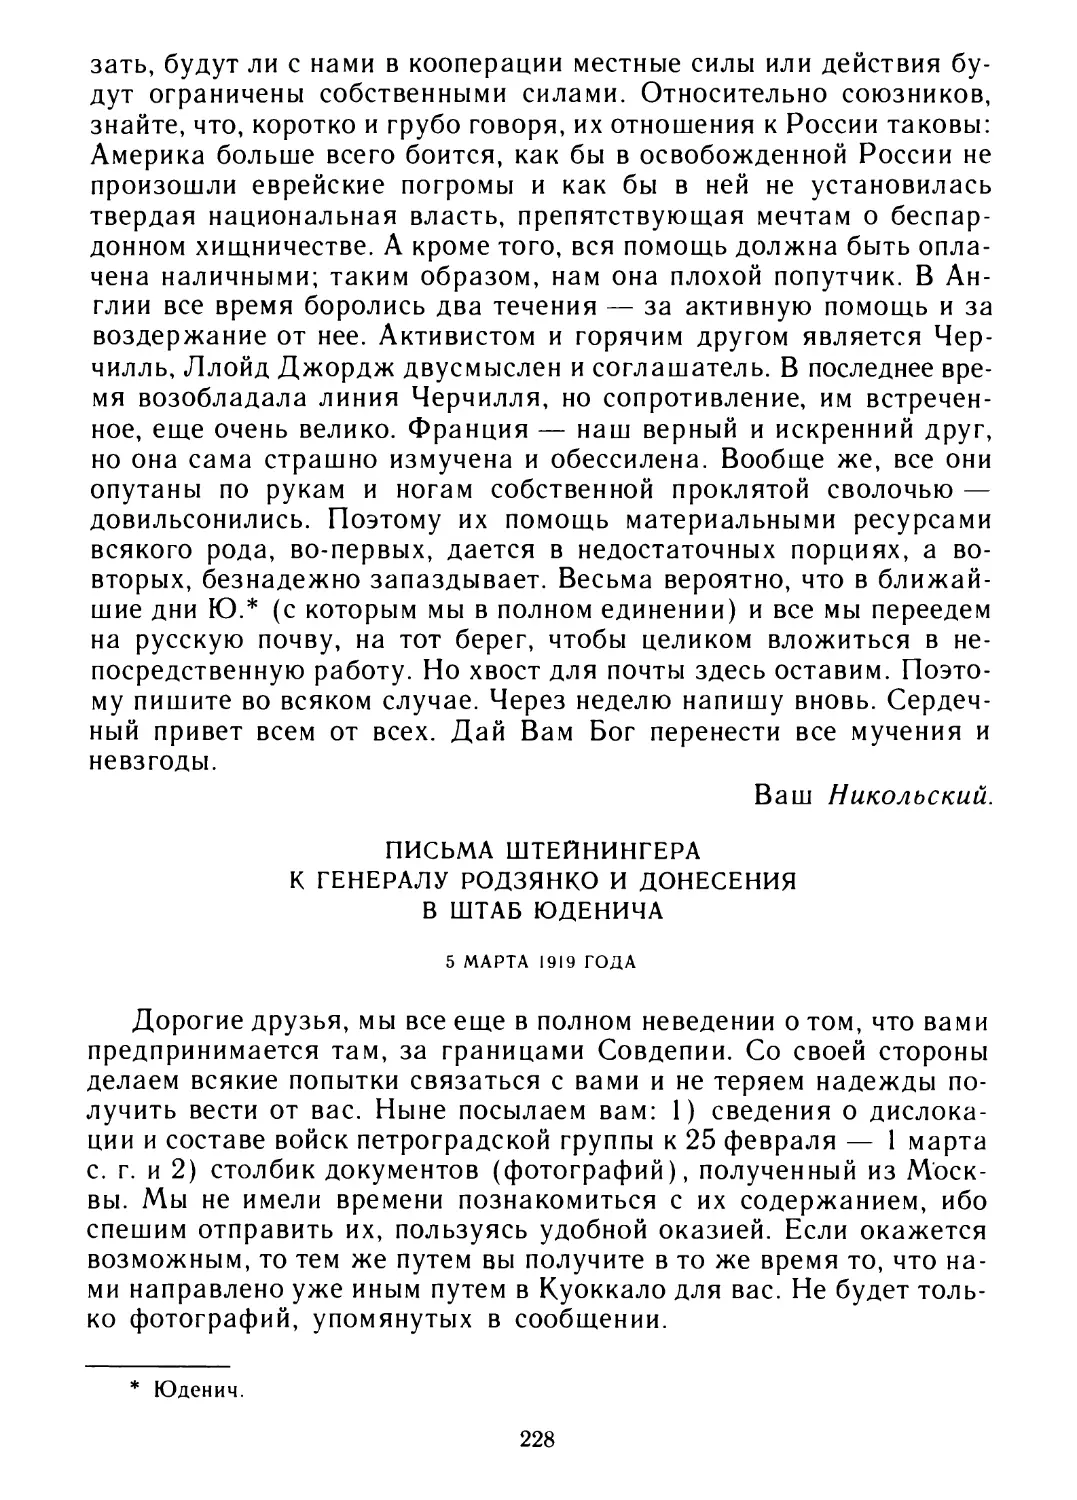 Письма Штейнингера к генералу Родзянко и донесения в штаб Юденича 5 марта 1919 года